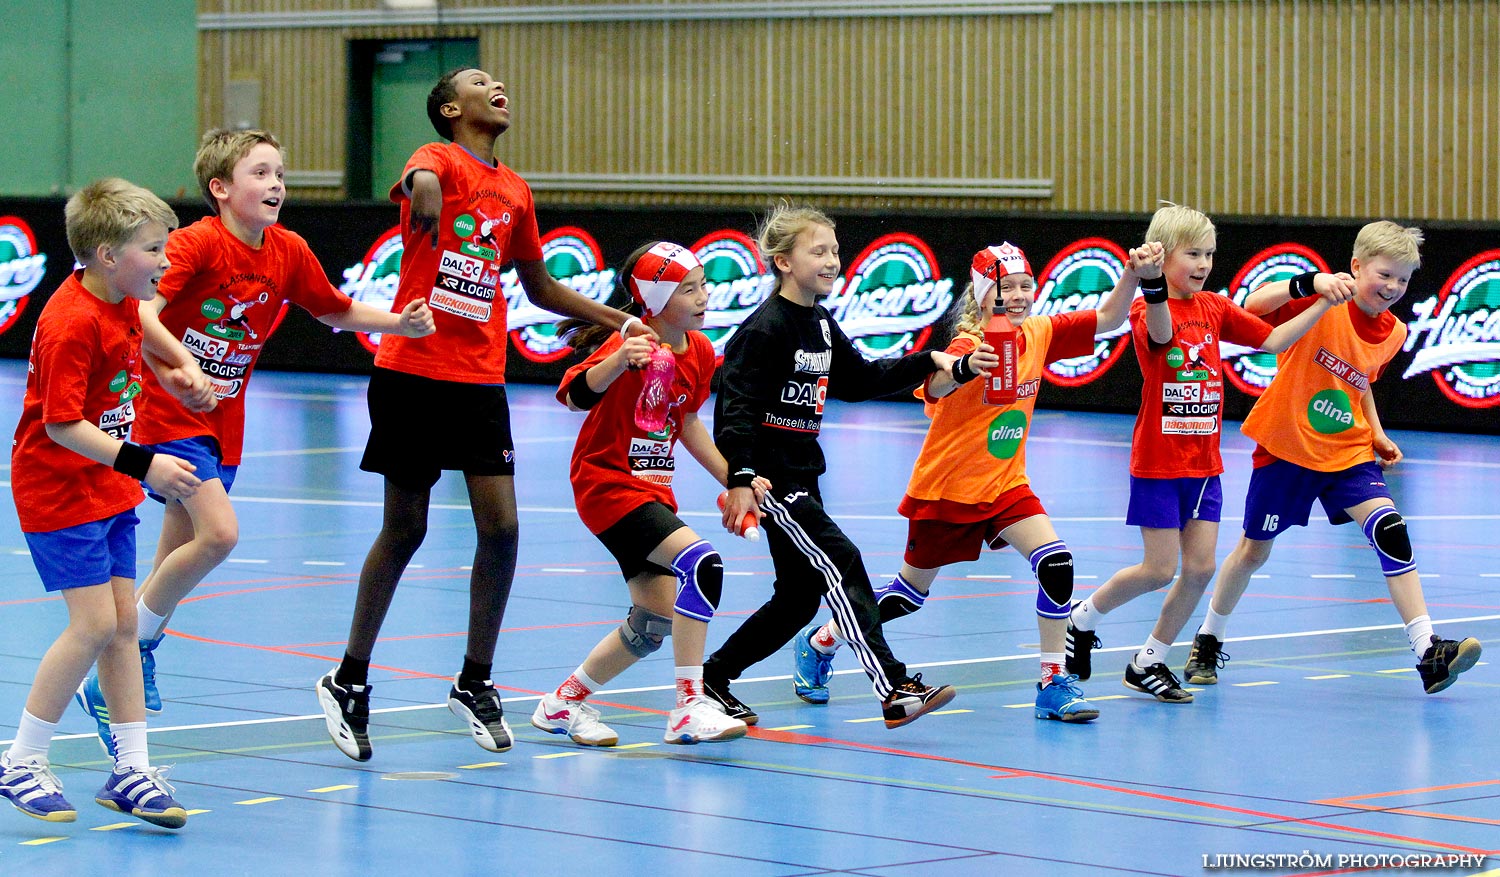 Klasshandboll Skövde 2013 Åldersklass 2002,mix,Arena Skövde,Skövde,Sverige,Handboll,,2013,63160